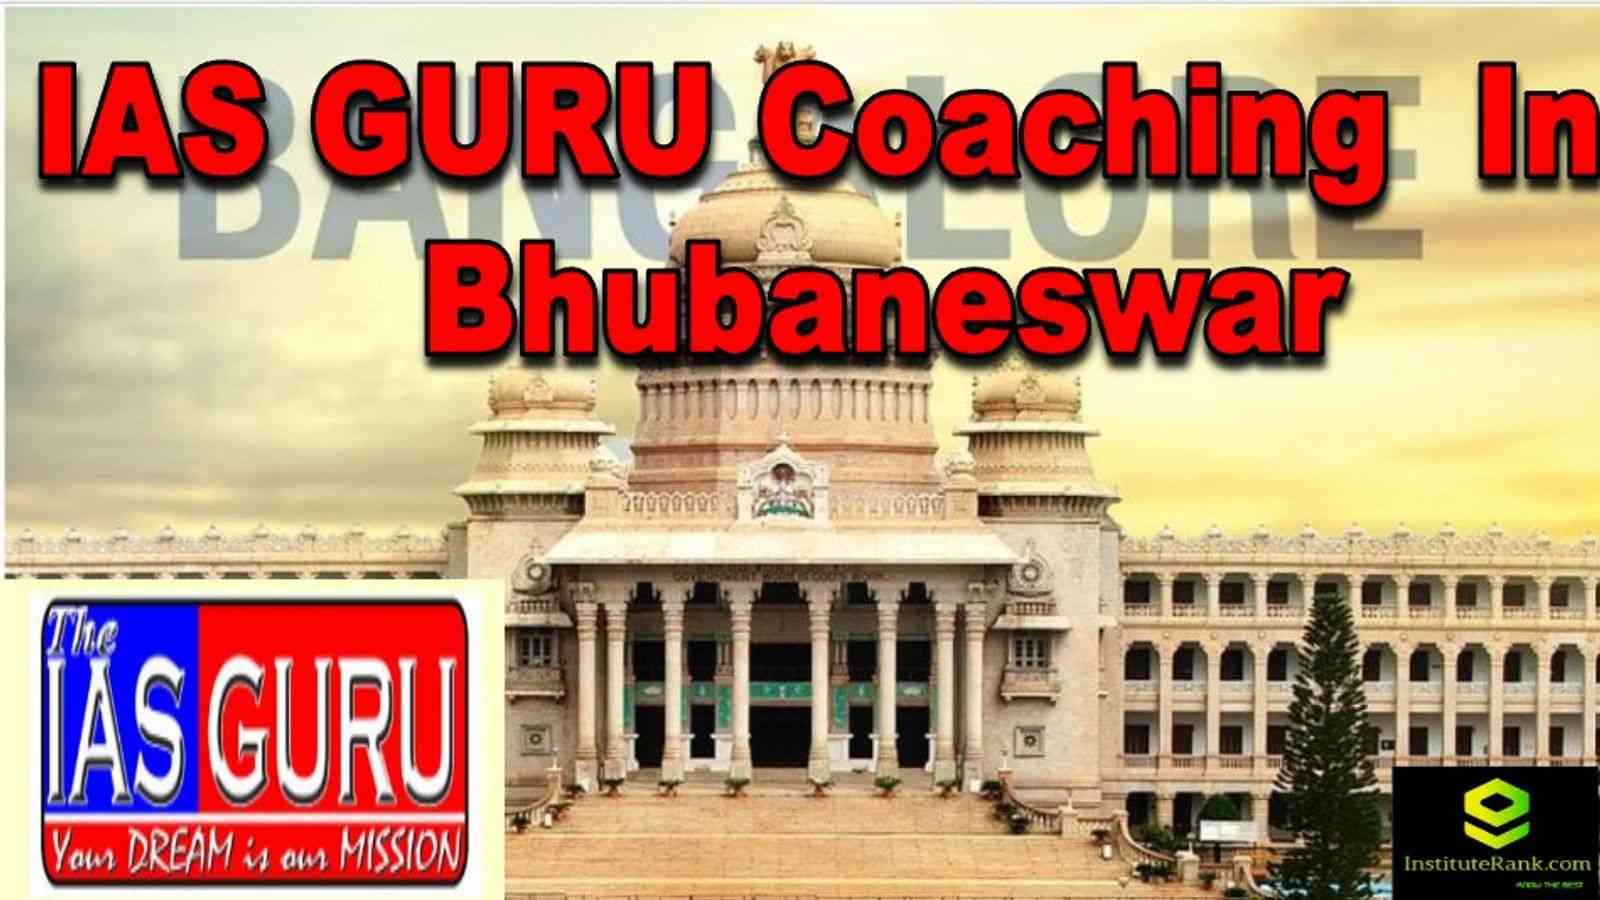 IAS GURU Coaching in Bhubaneswar | IAS Coaching Bhubaneswar